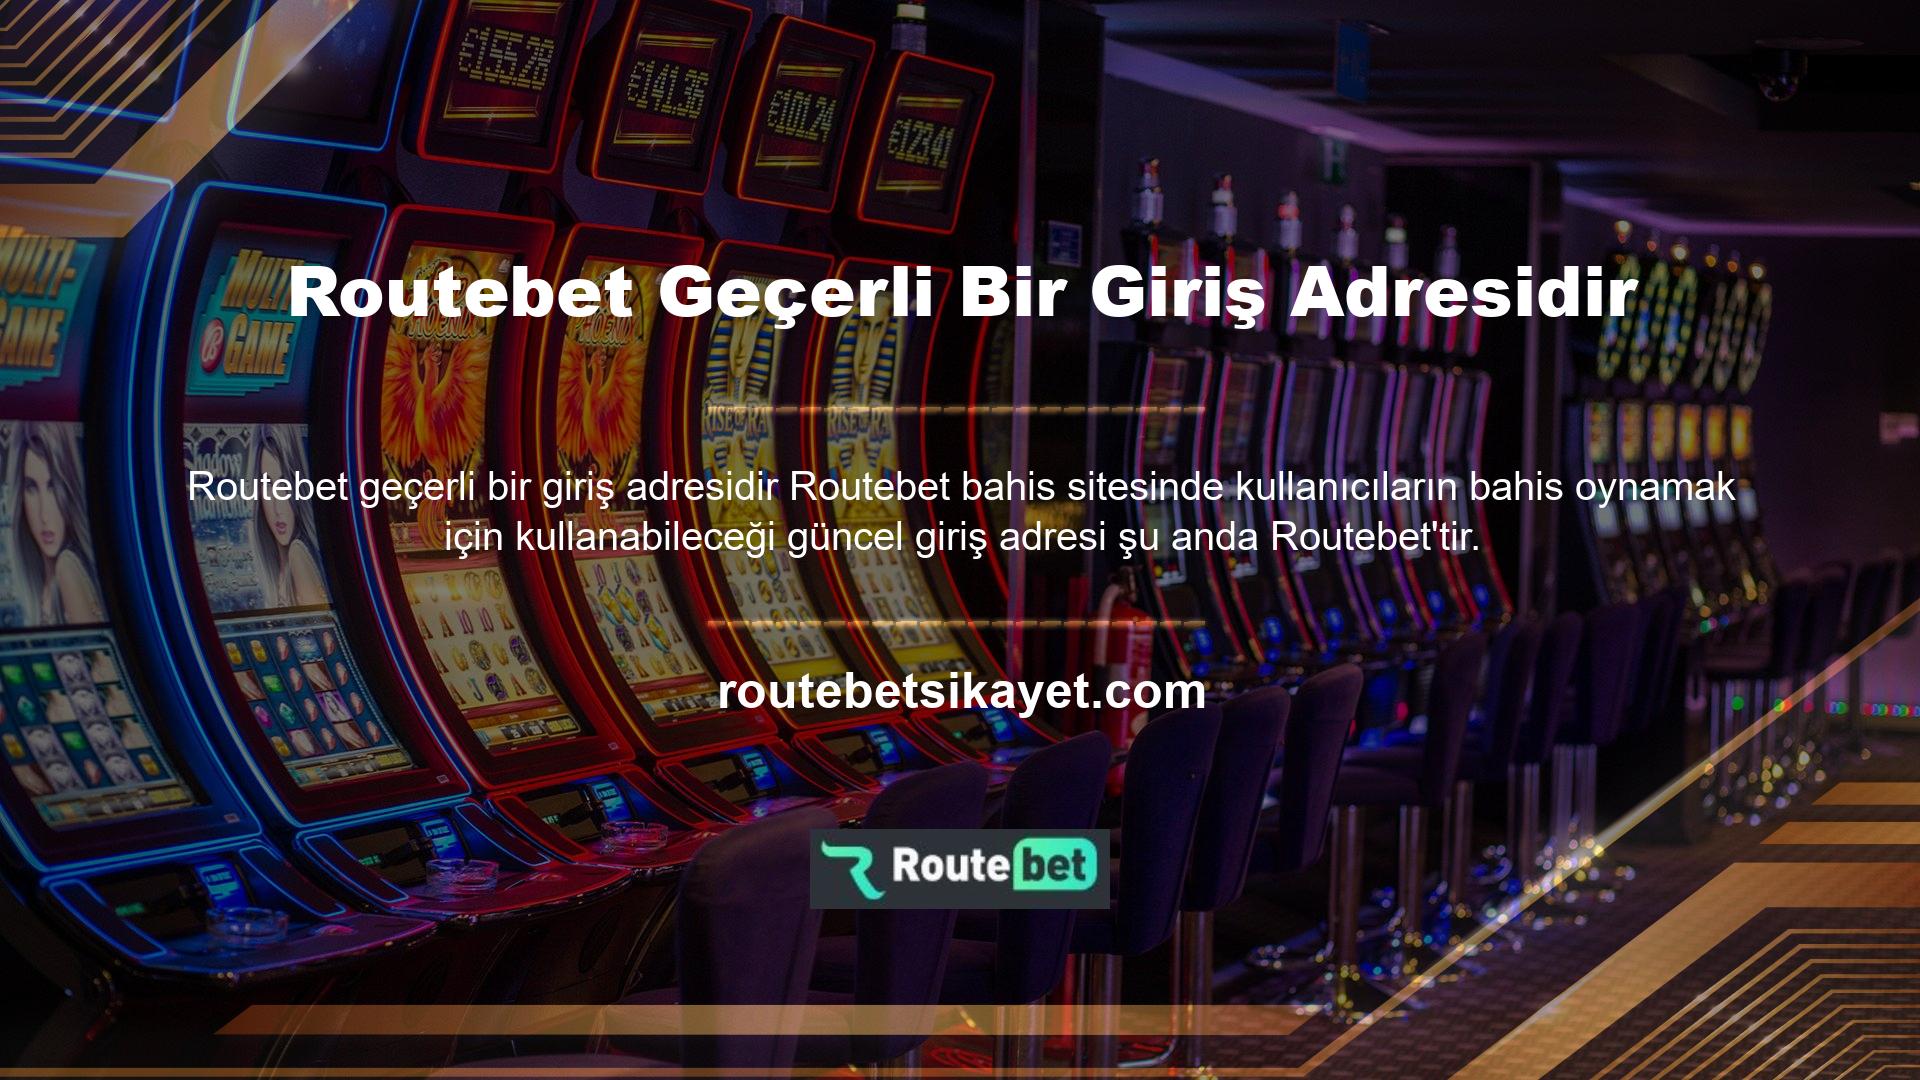 Kullanıcılar bu adresten siteye giriş yapabilir ve giriş yapmadan Routebet konuları üzerinde çalışabilirler